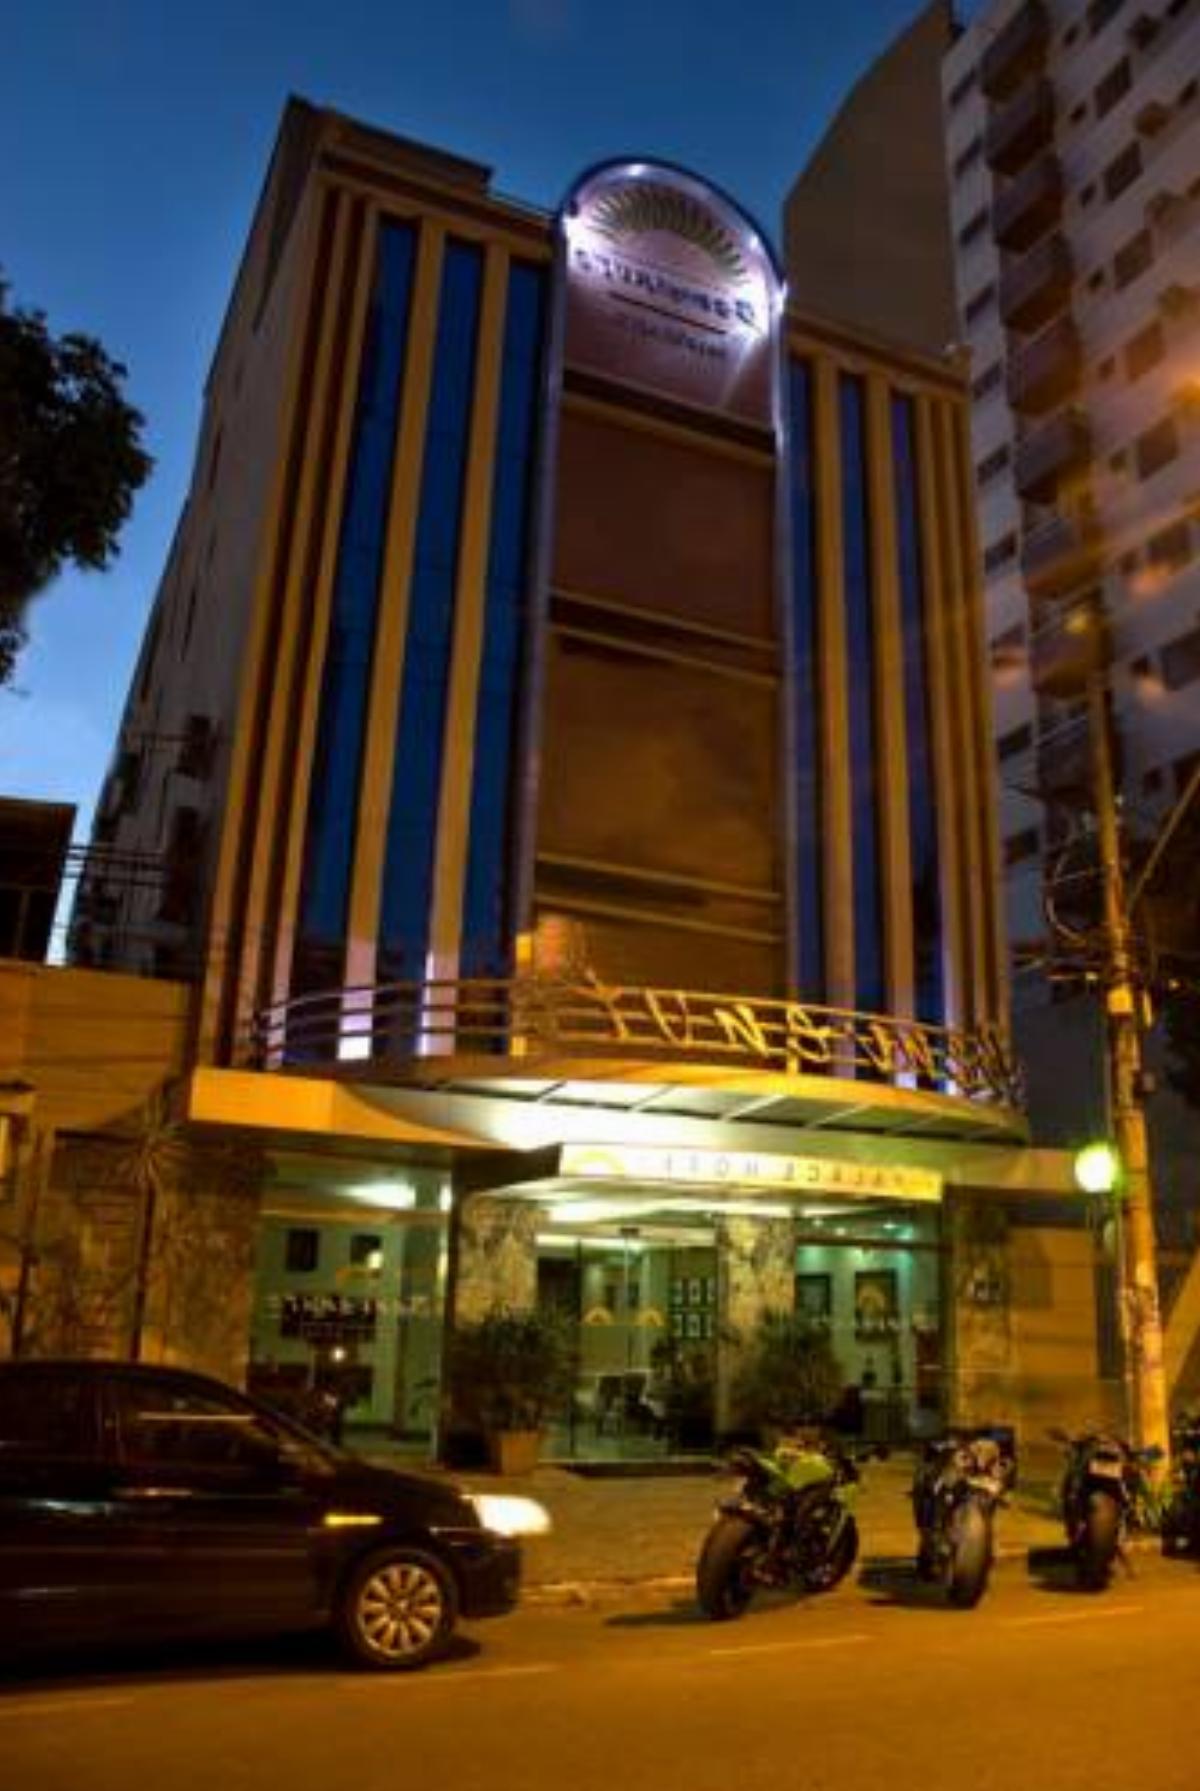 Benvenuto Palace Hotel Hotel Governador Valadares Brazil